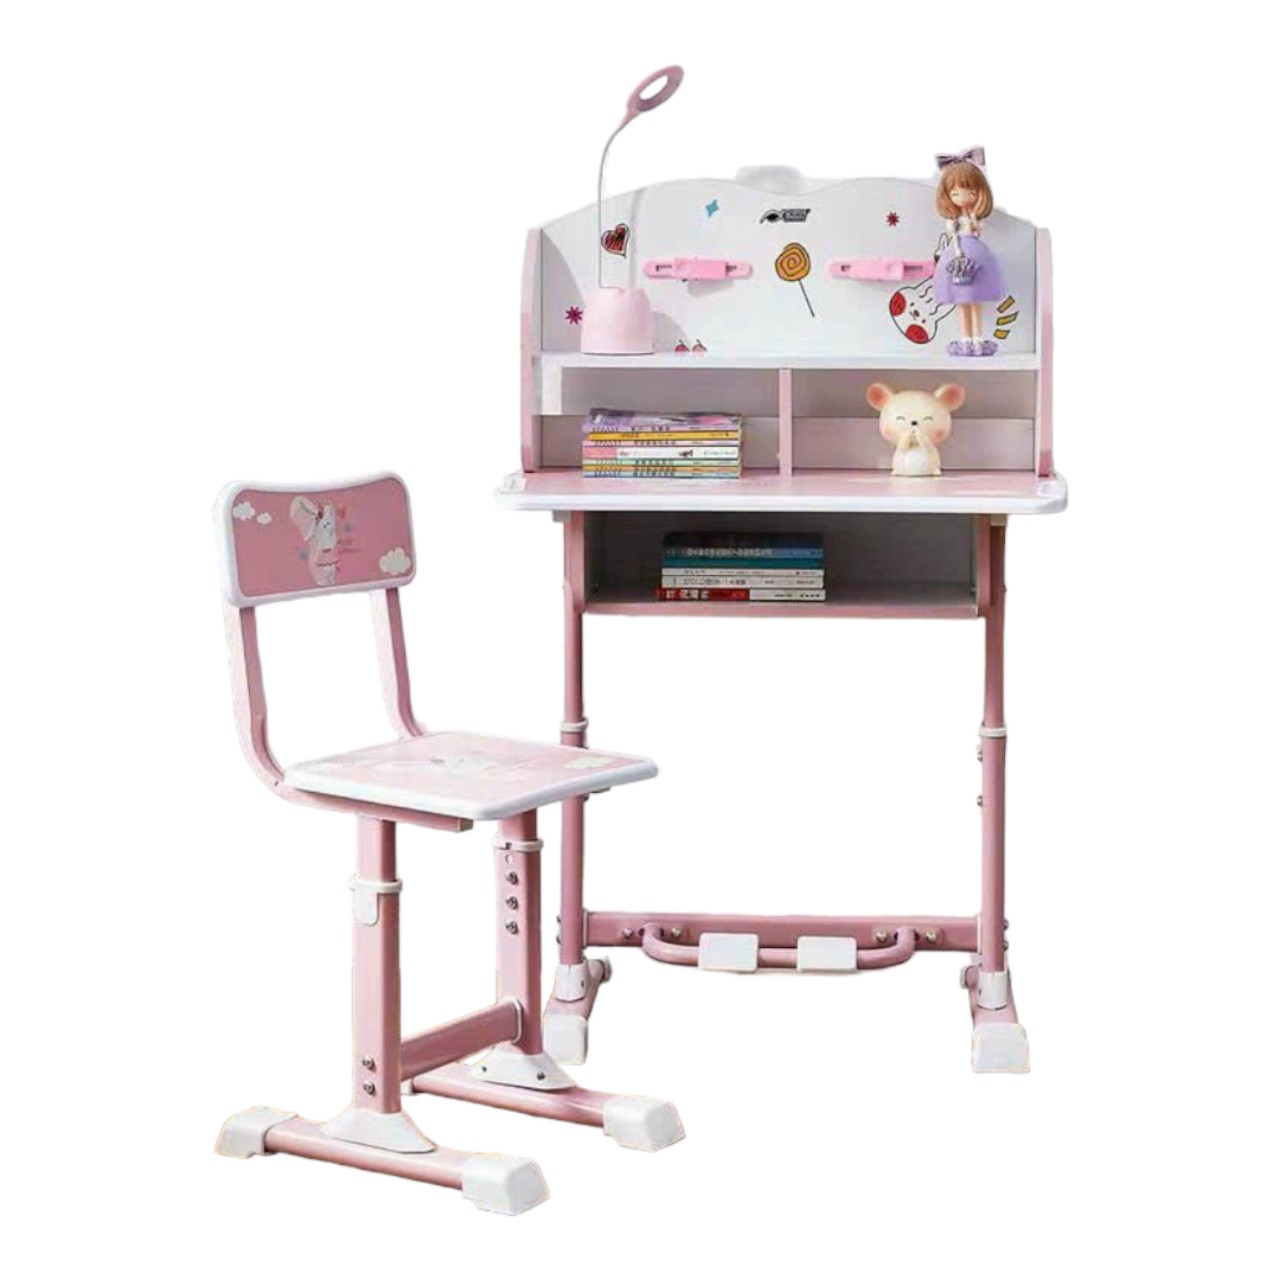 Bộ bàn ngồi học cho bé gái màu hồng: KG – B005-1